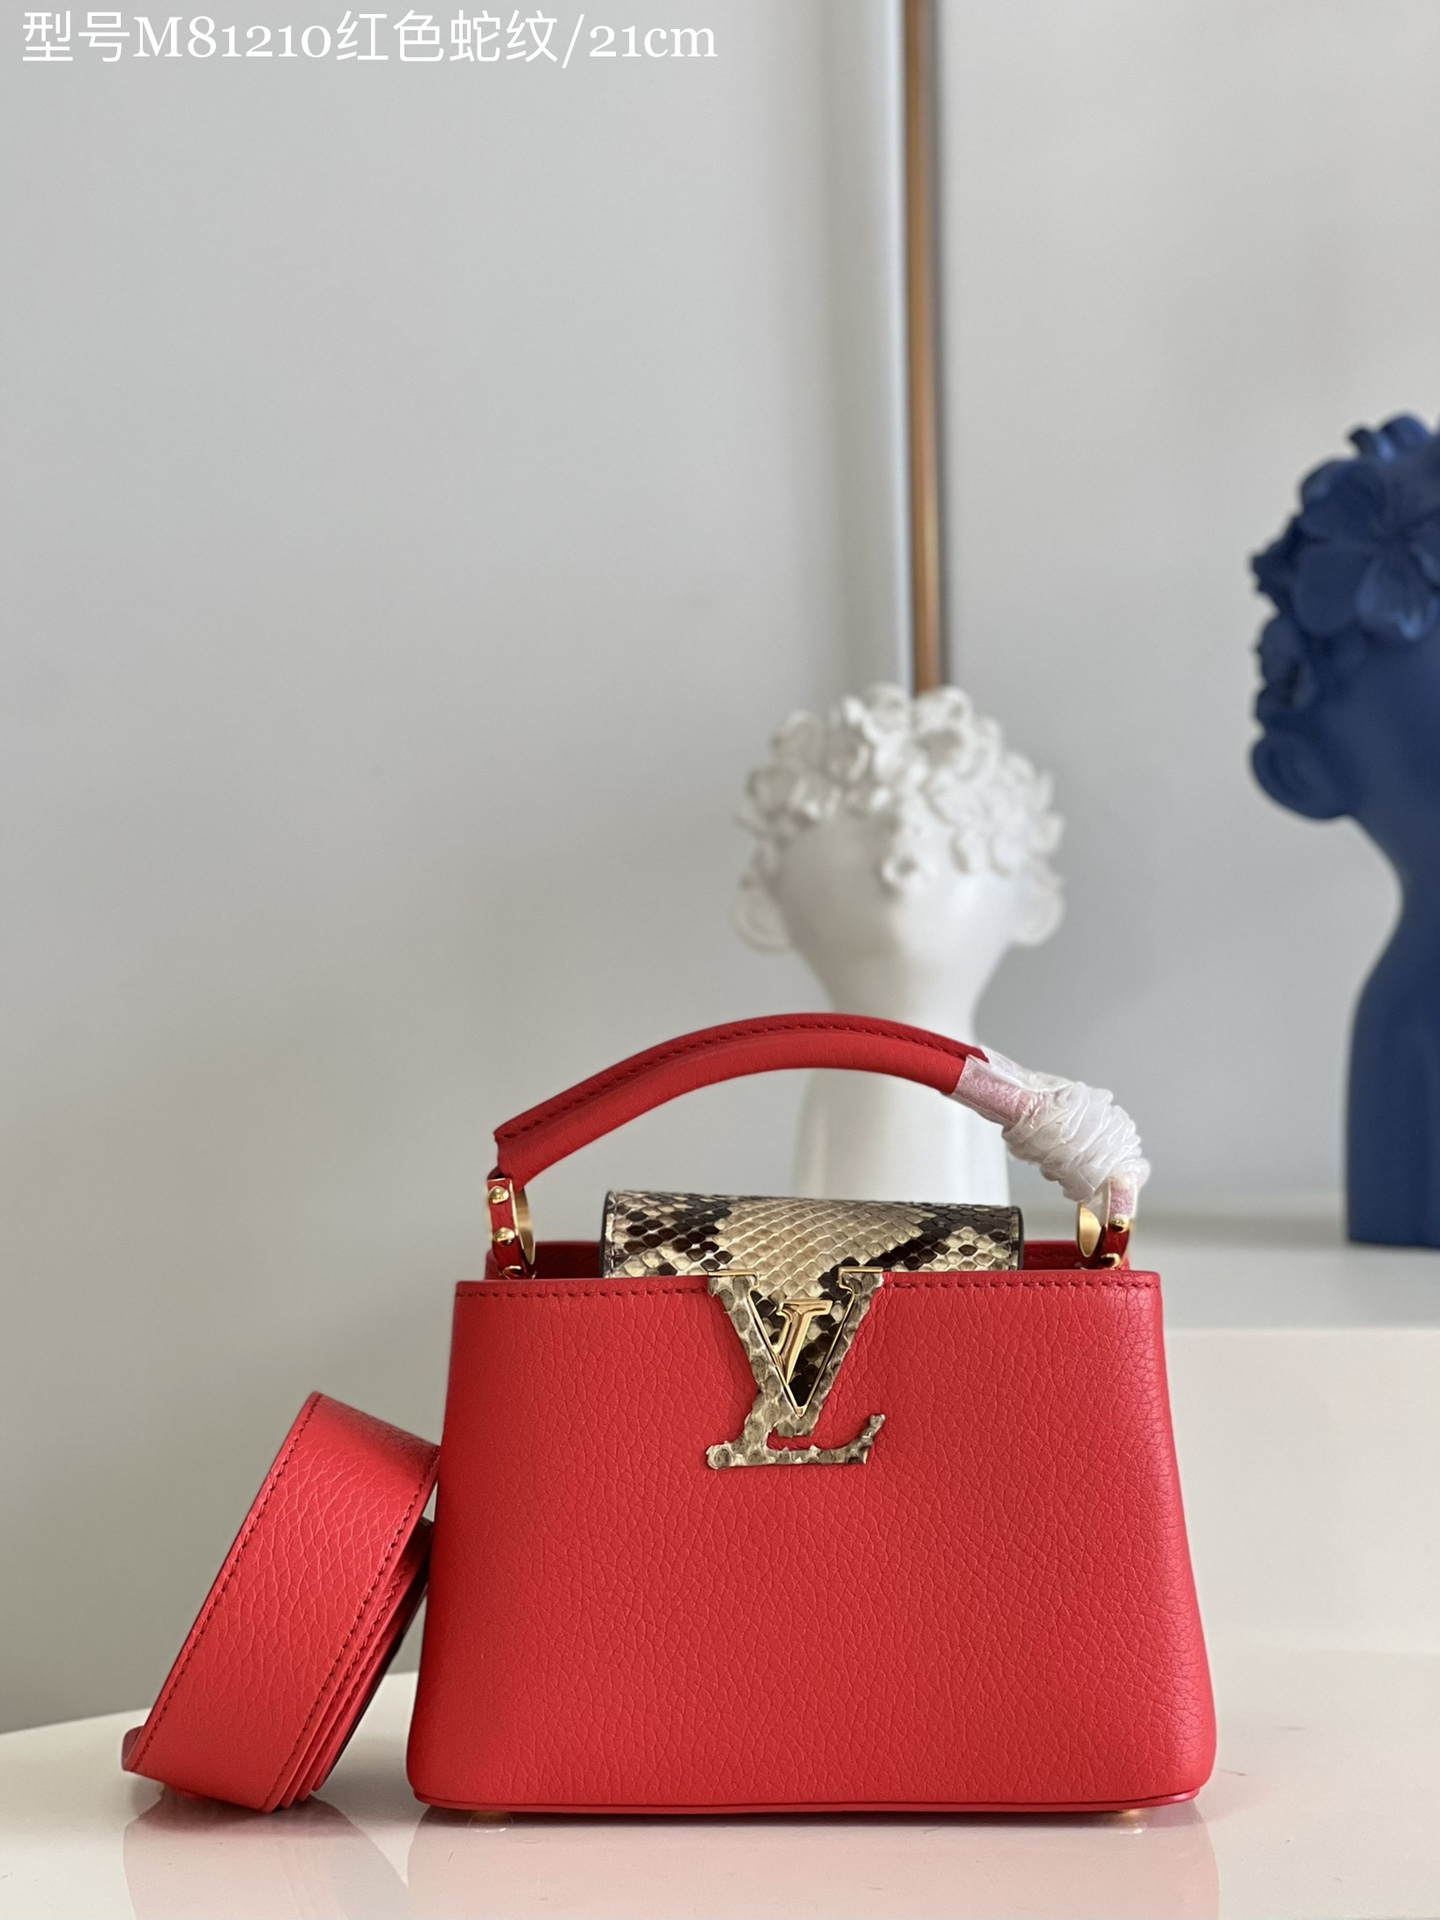 Louis Vuitton LV Capucines Bags Handbags Red Calfskin Cowhide Mini M81210